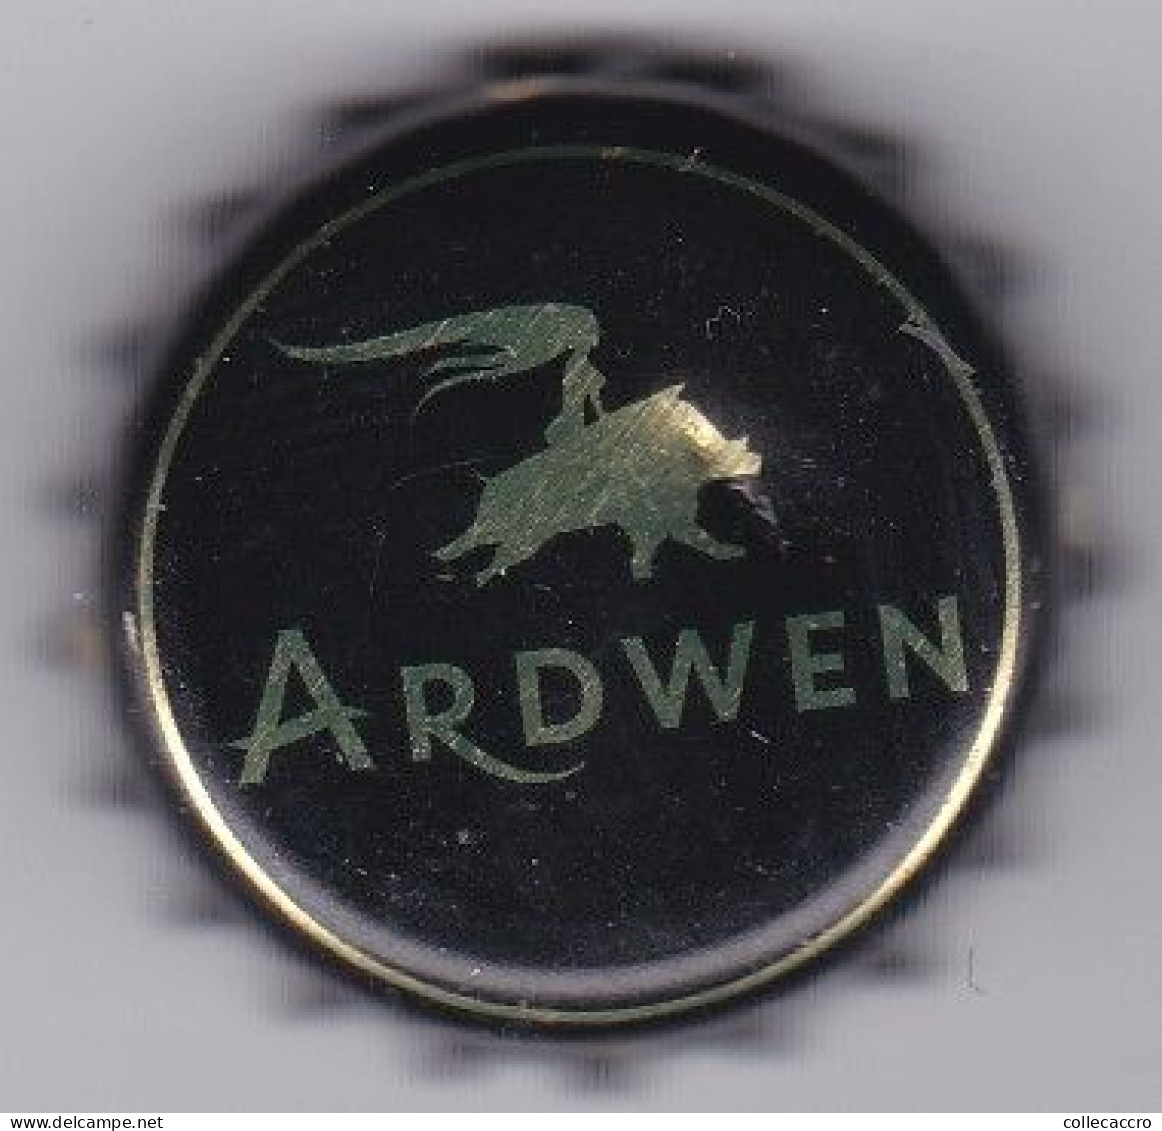 Ardwen - Beer